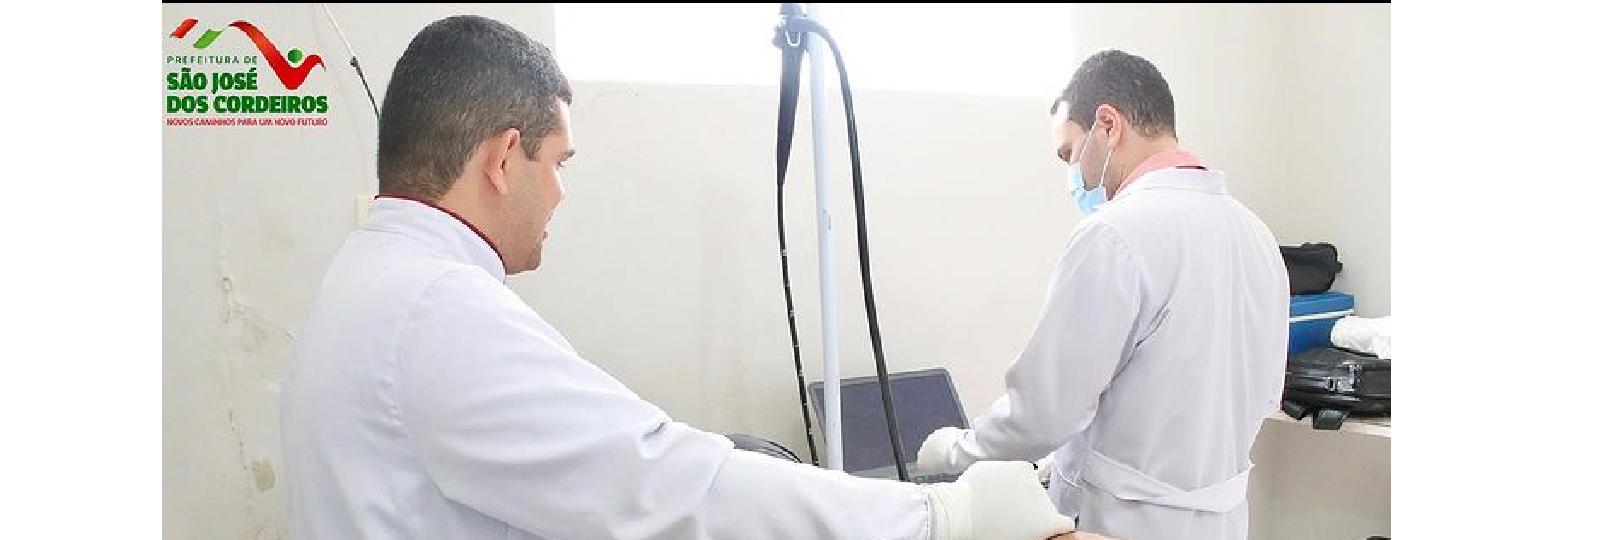 Em São José dos Cordeiros: Saúde realiza exames de endoscopia para a população